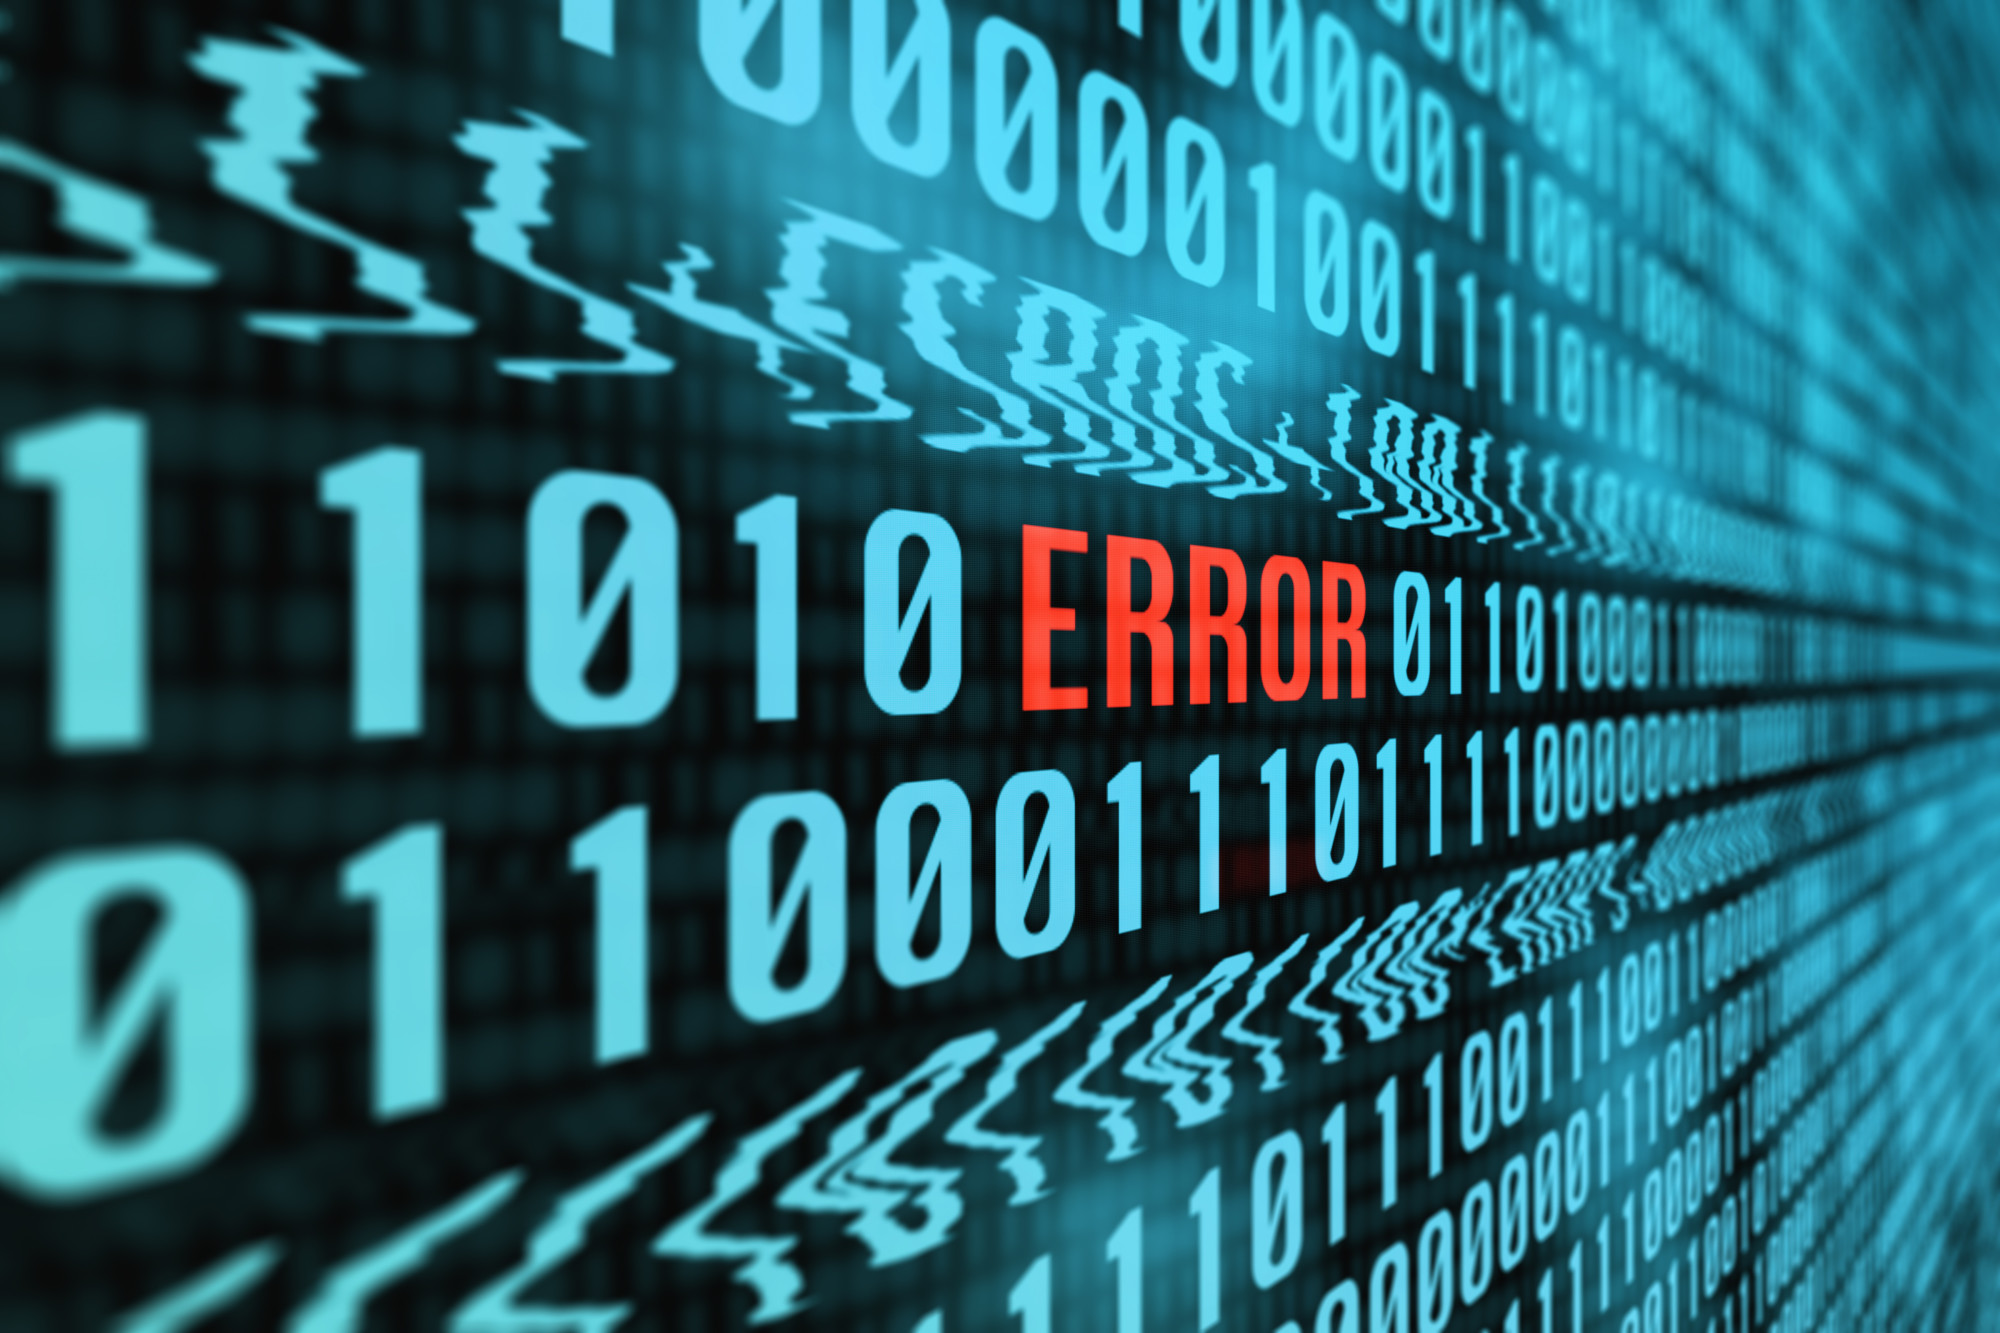 errors in IT management